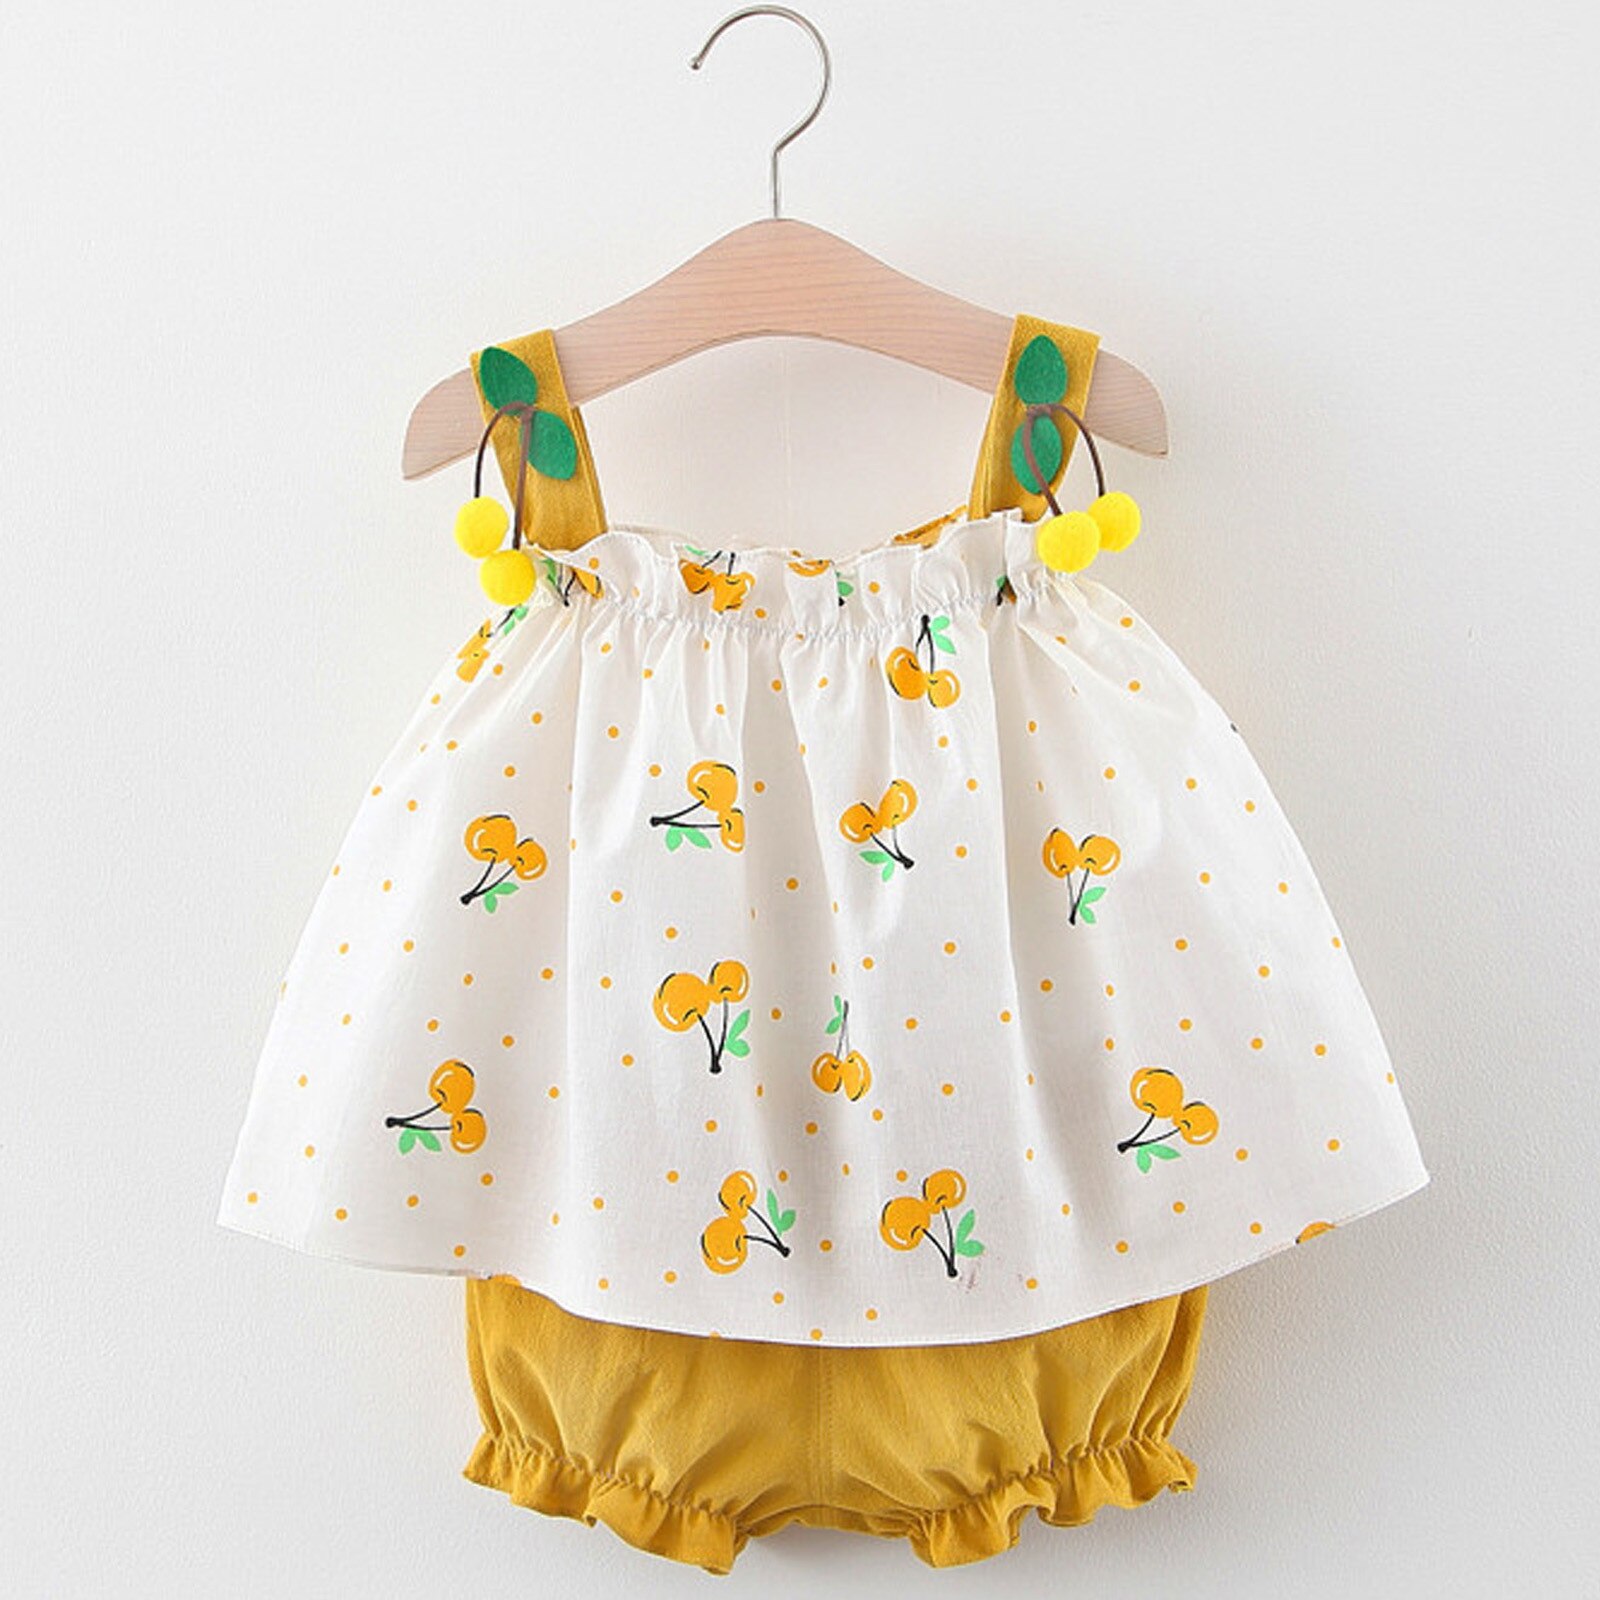 Meisjes Kleding Mouwloze Jurk Baby Baby Meisjes Bretels Polka Dot Print Jurk Tops Shorts Outfits Kinderkleding Sets